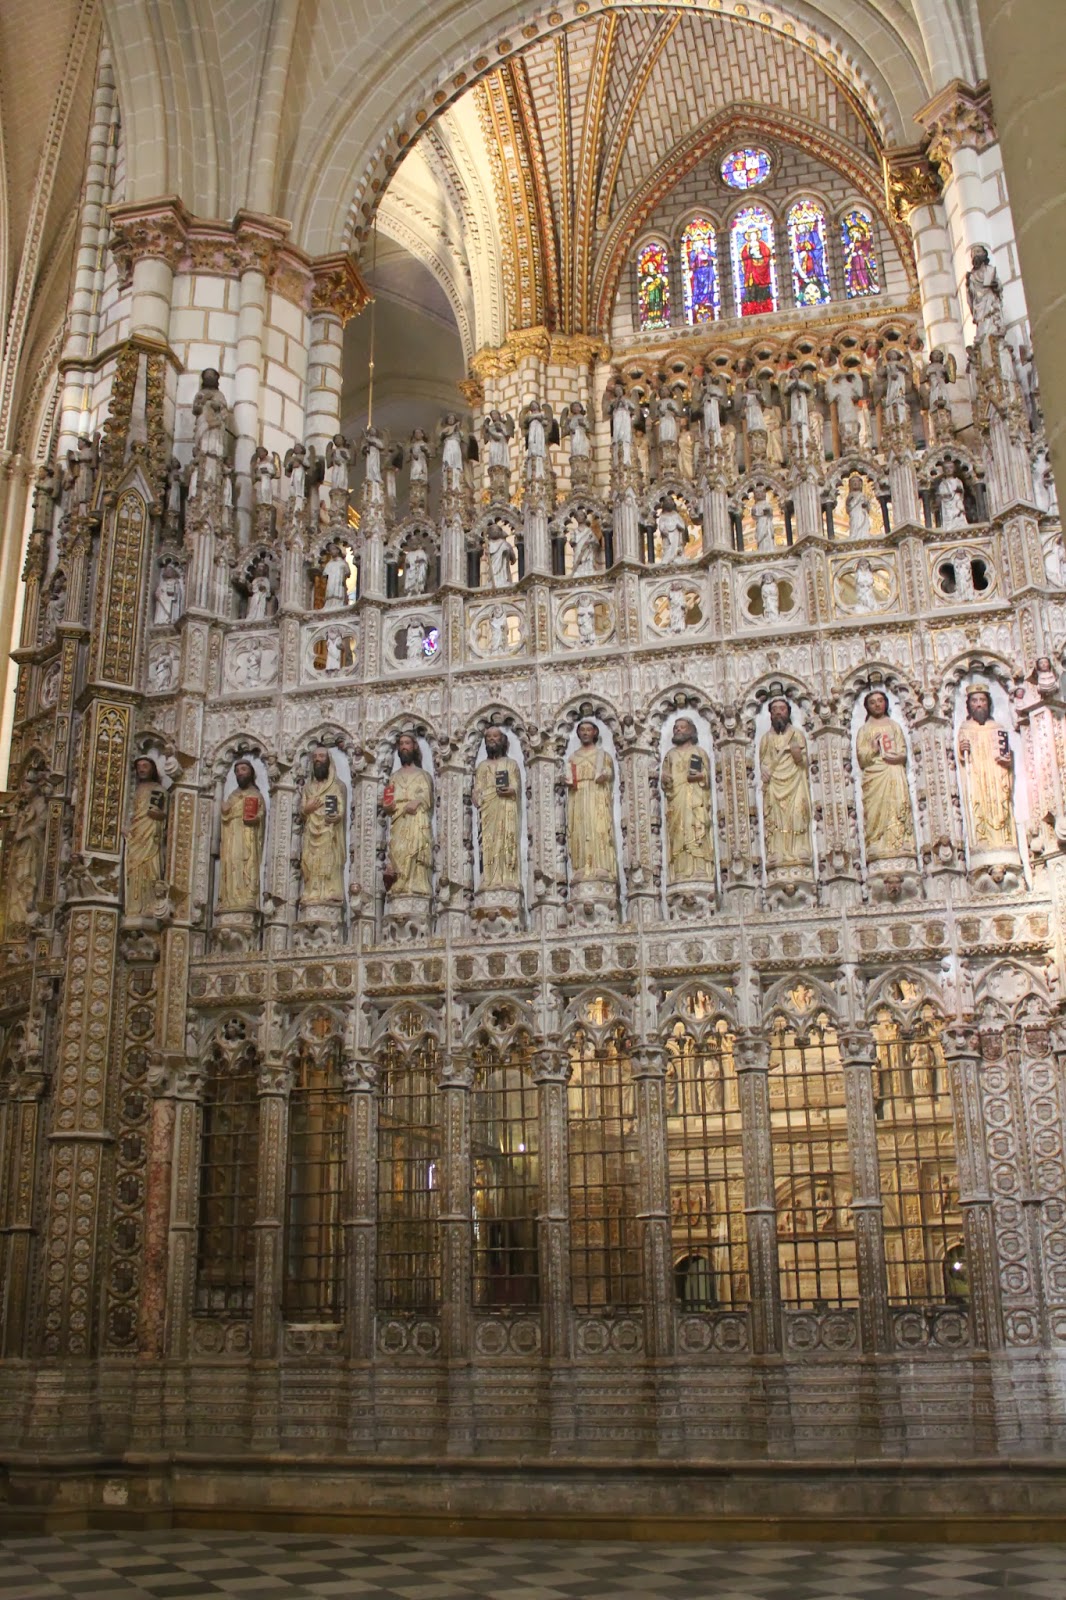 Maravillas ocultas de España: Catedral de Toledo.Altar mayor,coro y mas cosas.Tercera parte